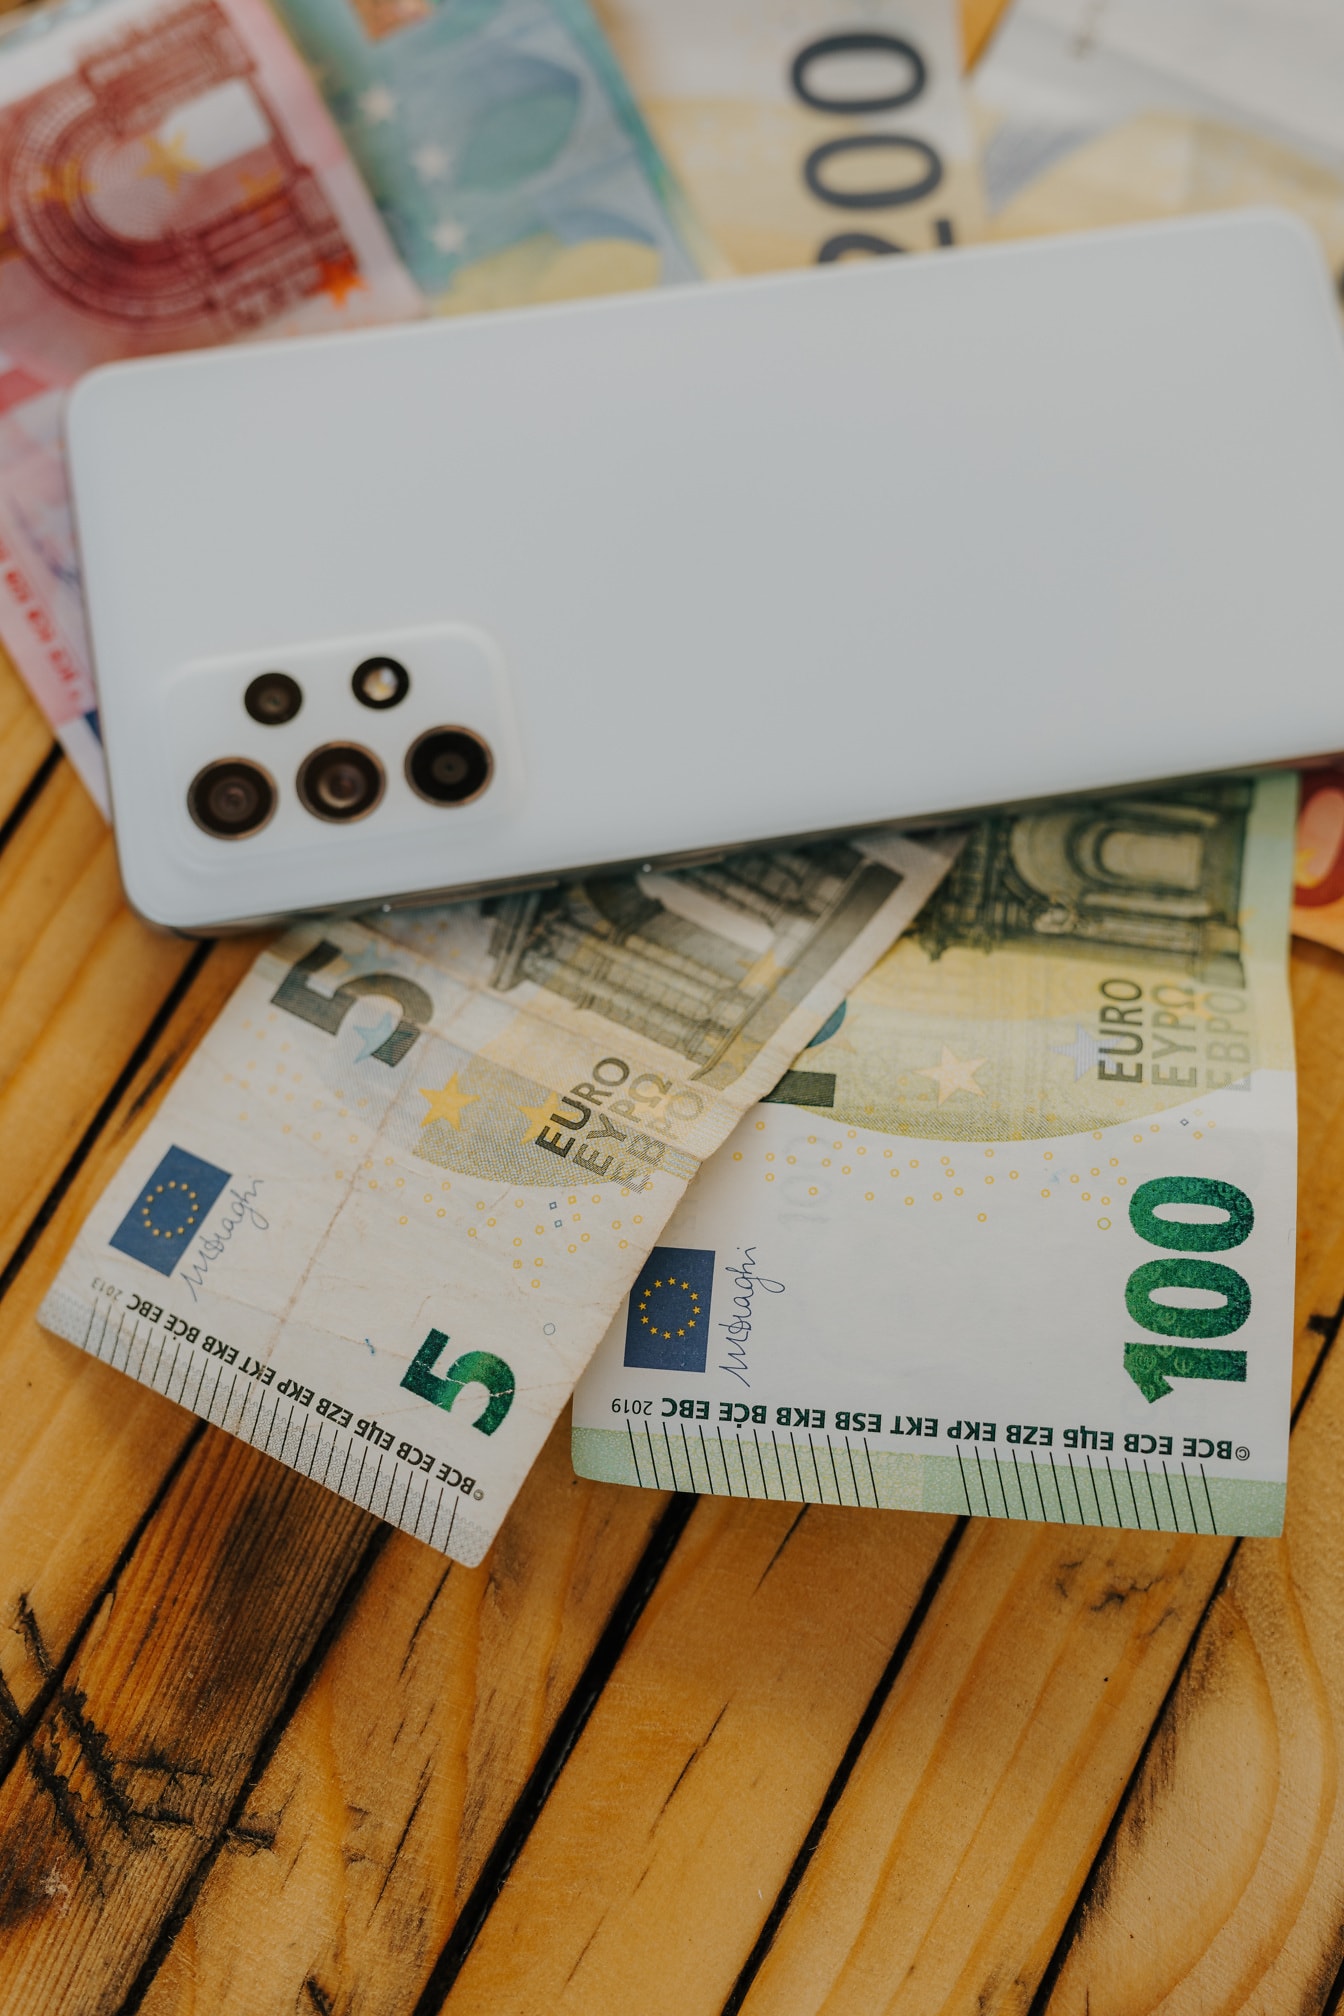 Eurové bankovky s bielym mobilným telefónom